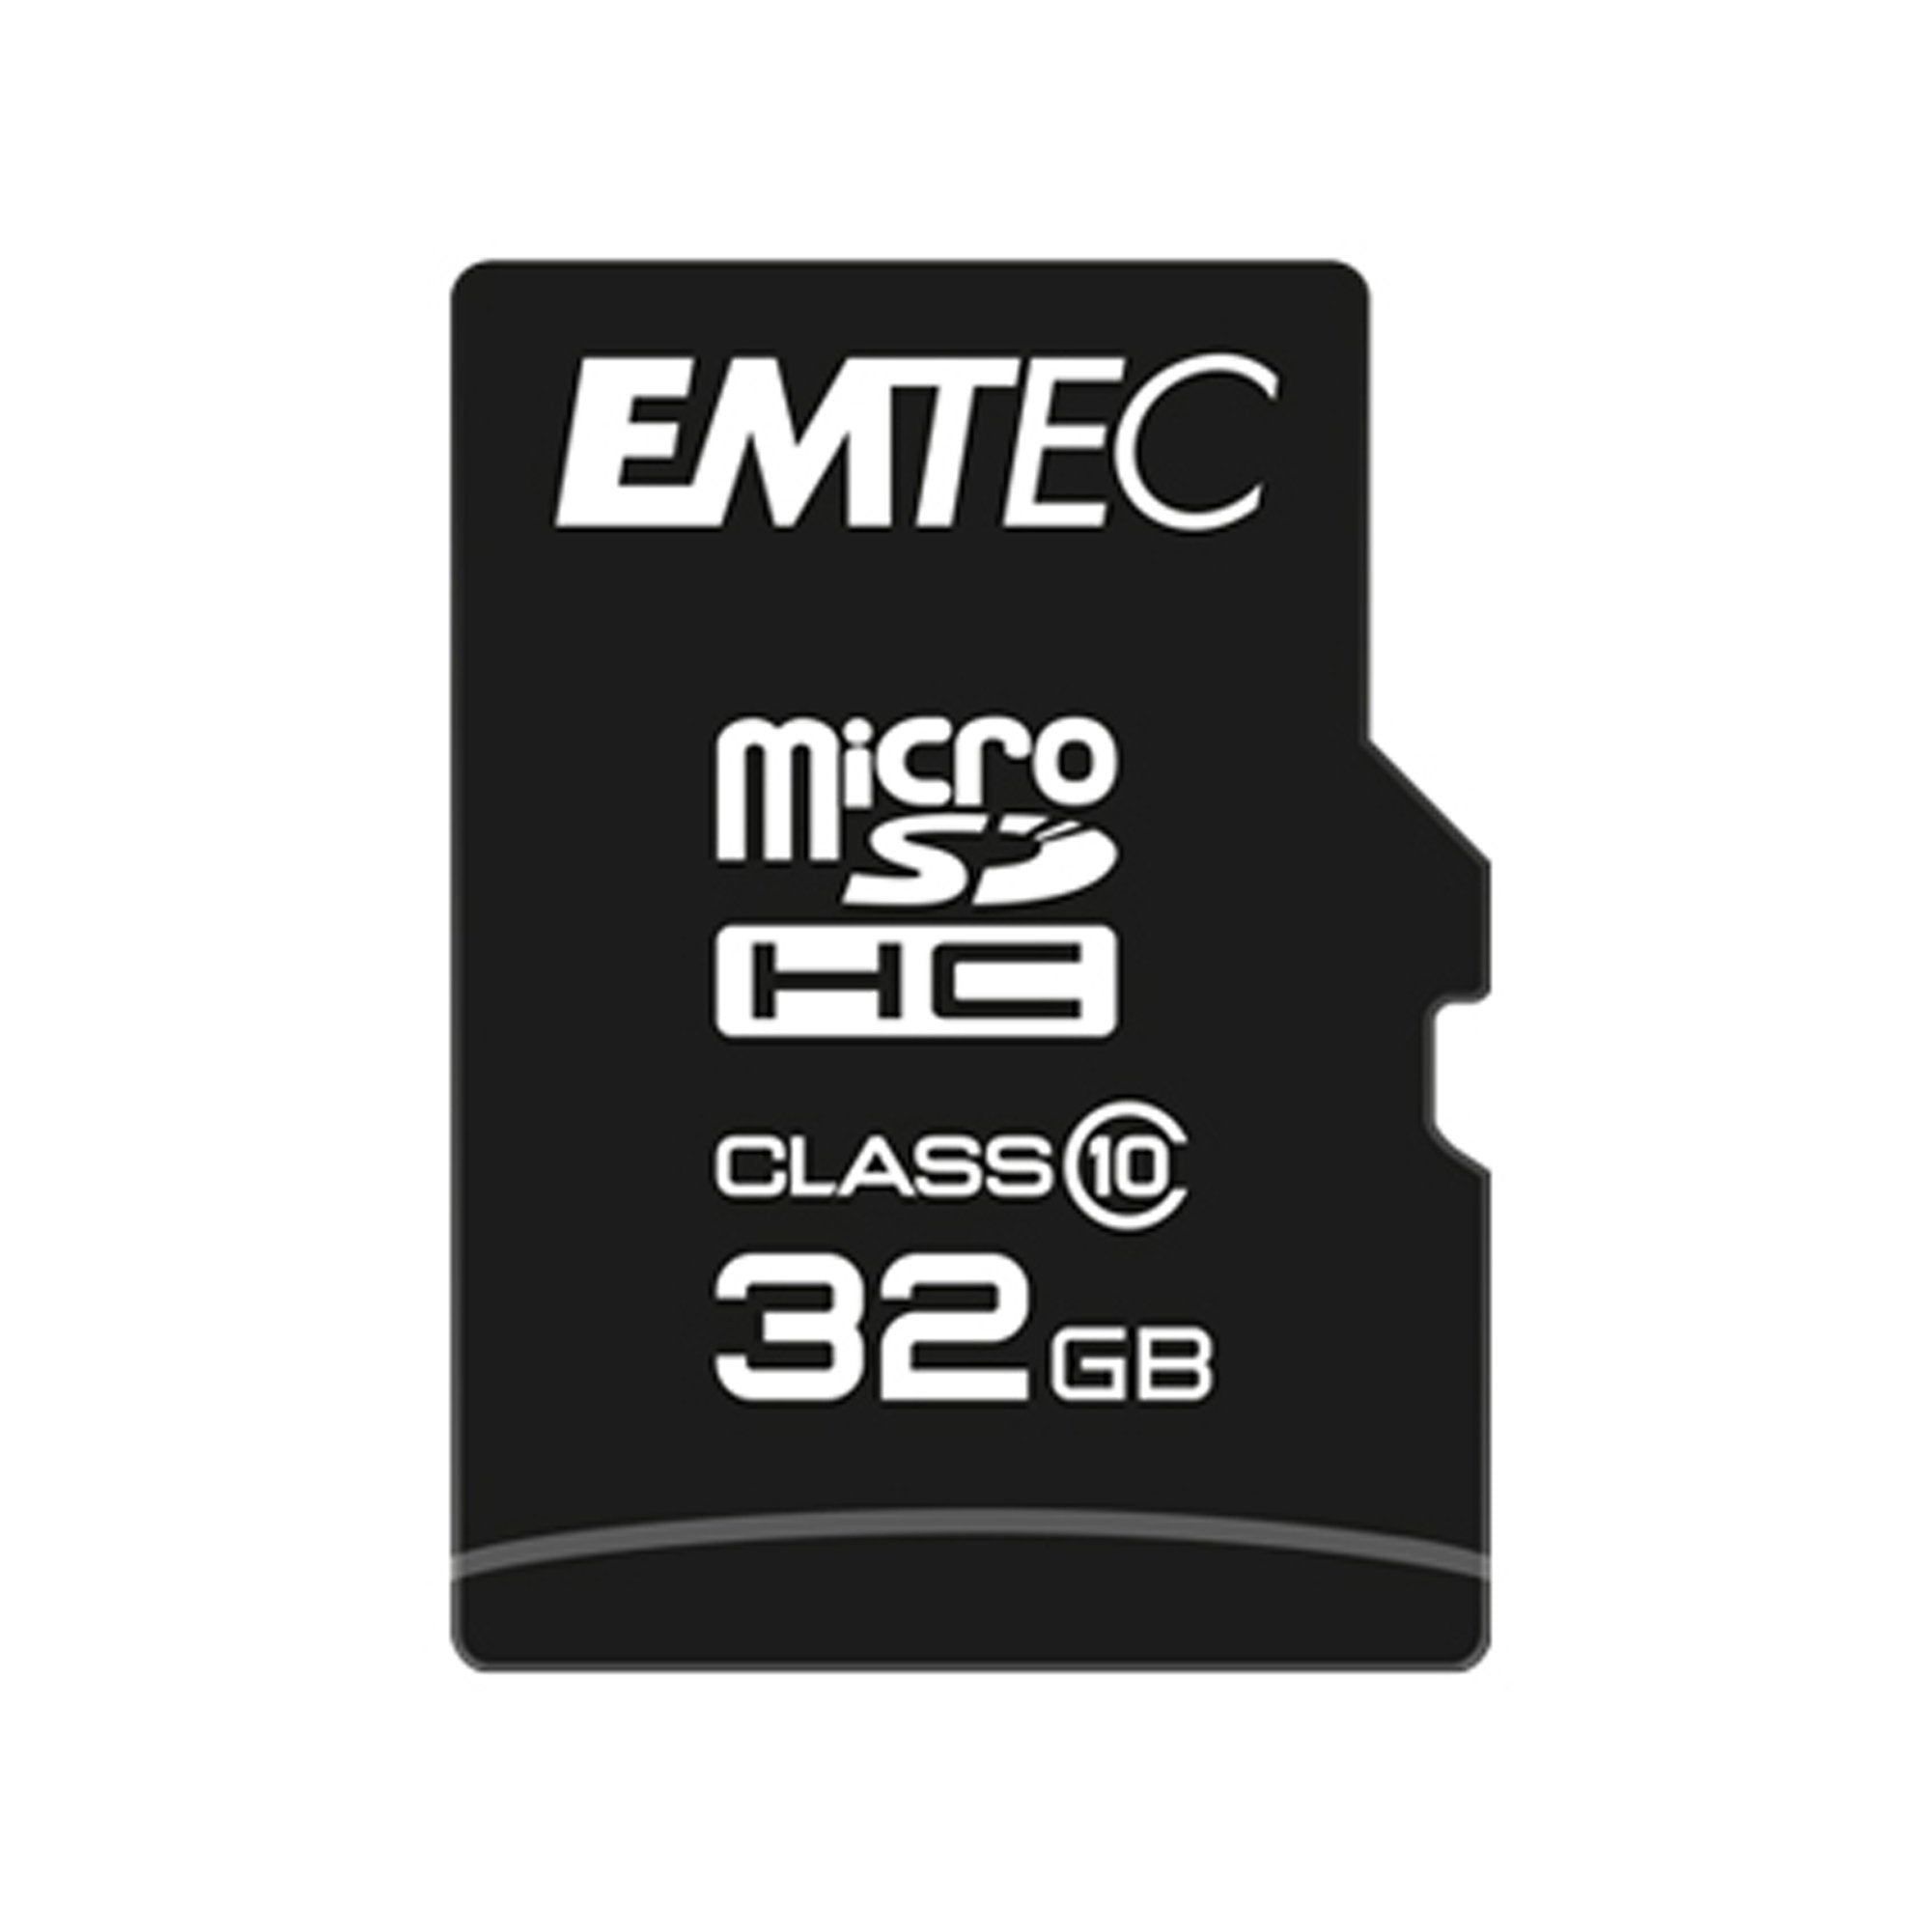 emtec-microsdhc-32gb-class10-classic